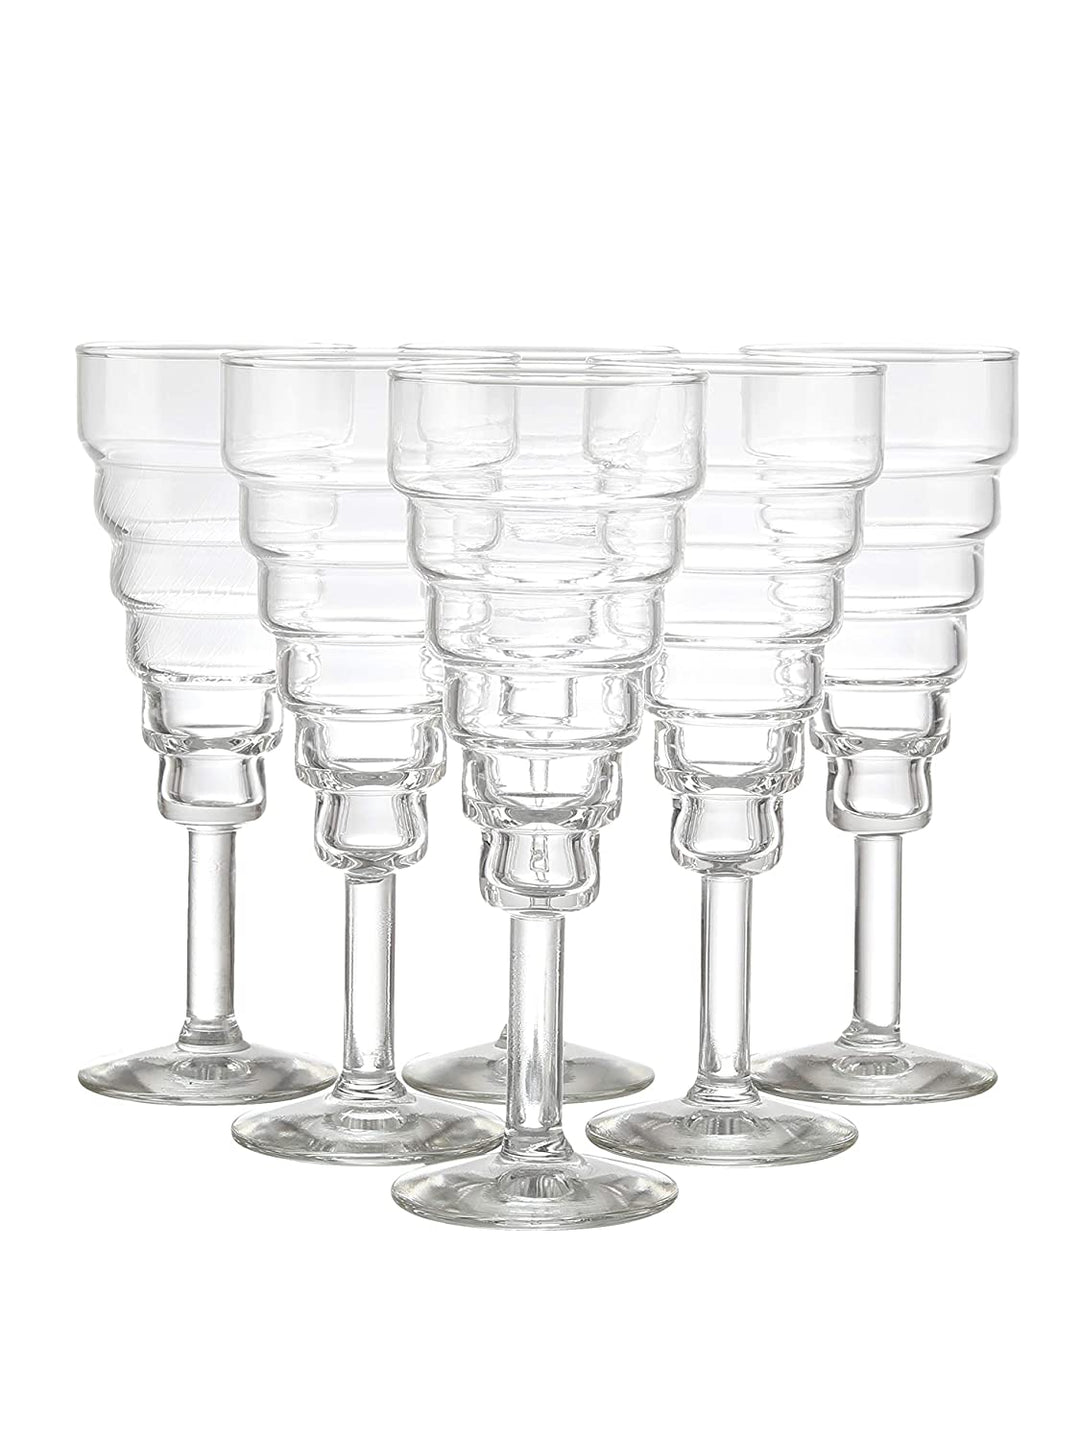 Durobor 2979/14 Sparkling Wine Flute Glass 4.7 oz